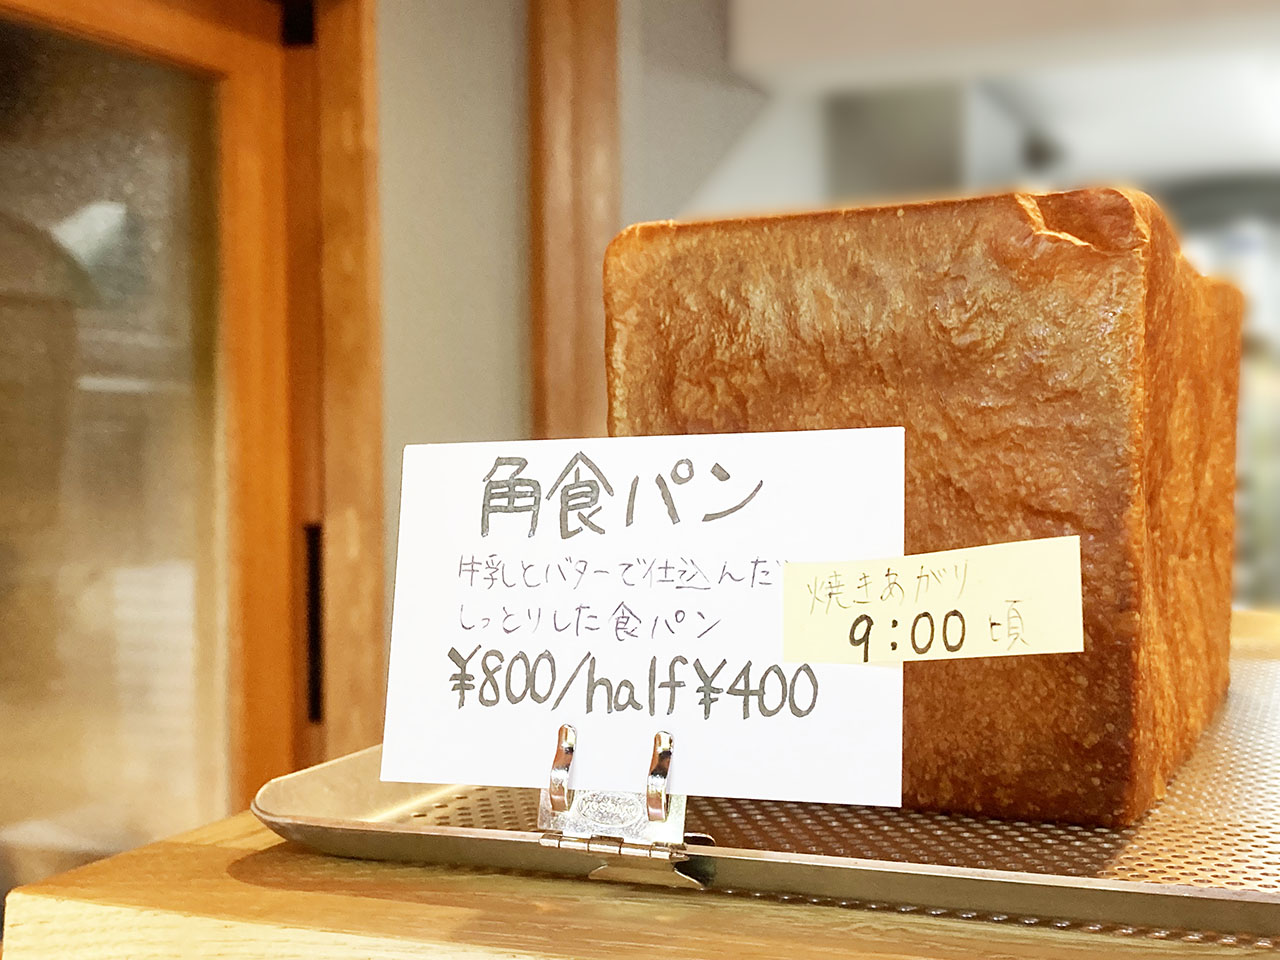 唐木田にちいさなパン屋さん「ichi」がオープンしました